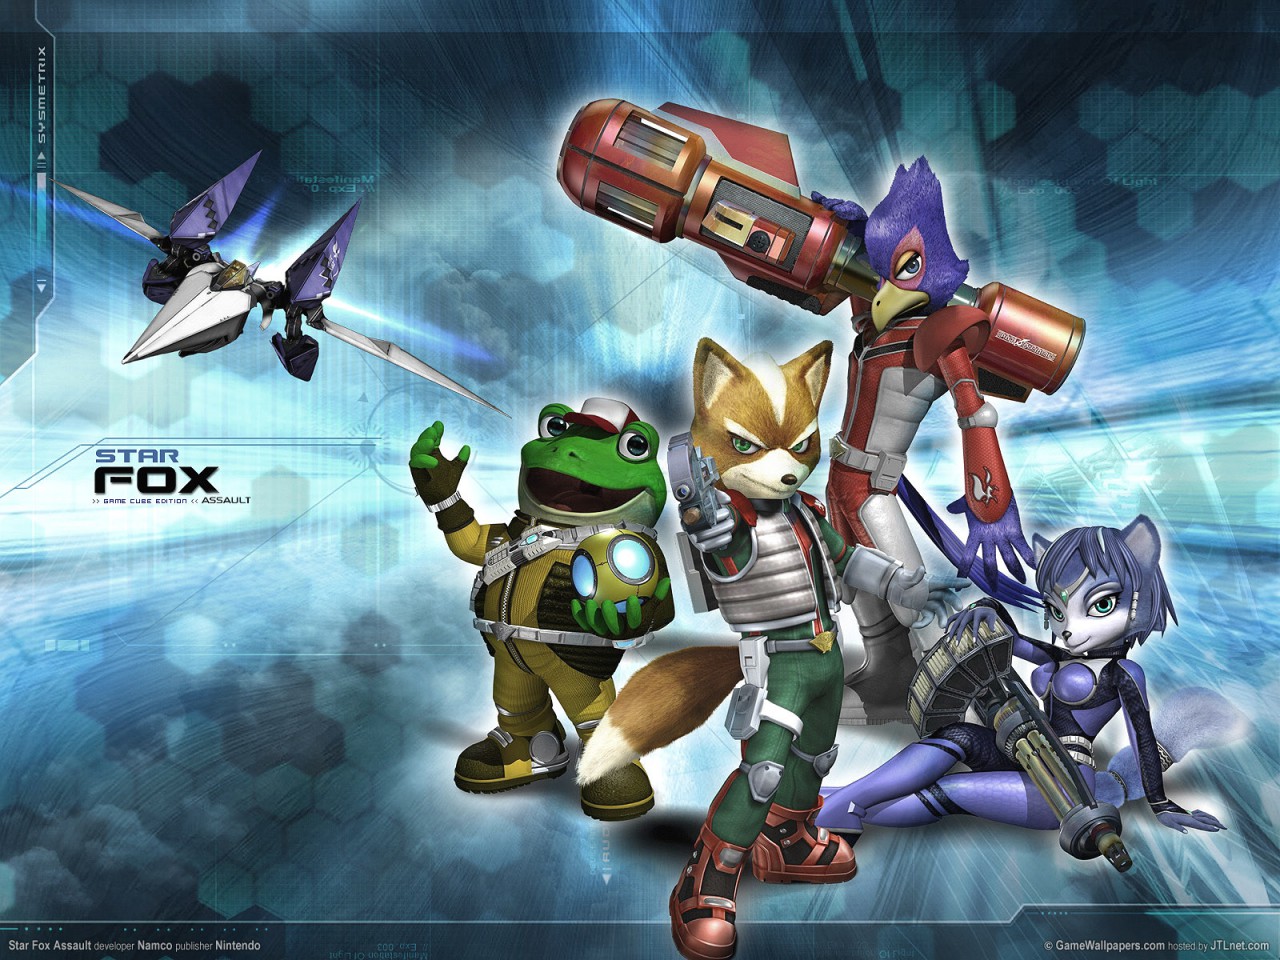 Star Fox Adventures - GameCube, Game Cube